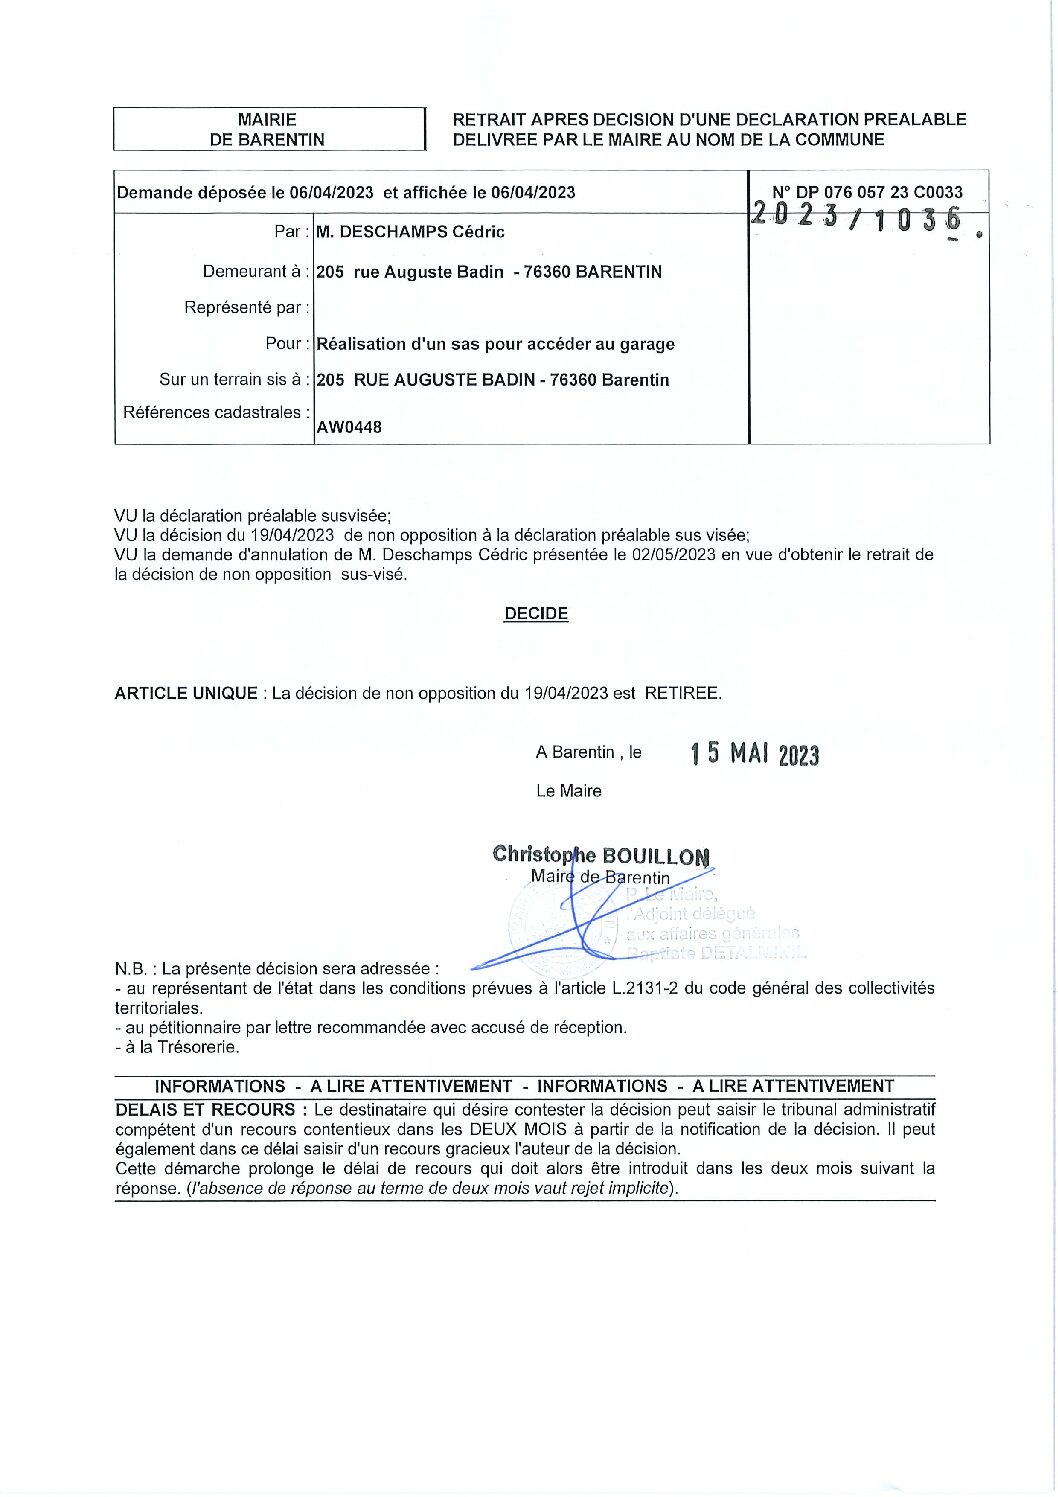 ARRETE 2023.1036 – DP 076.057.23C0033 – Monsieur Cédric DESCHAMPS – retrait après décision